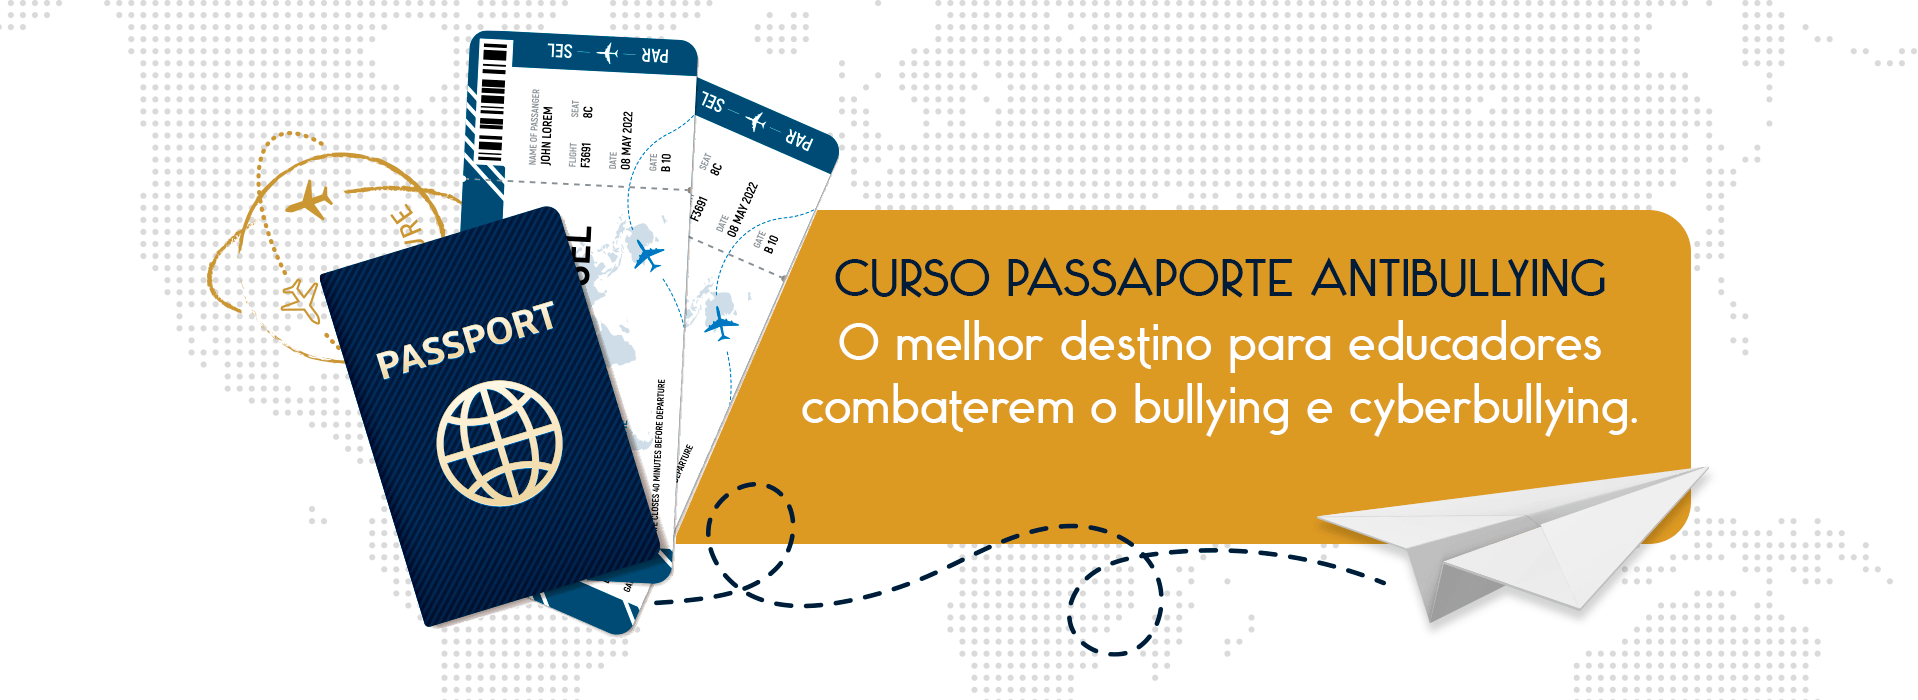 Passaporte Antibullying - Capa Home